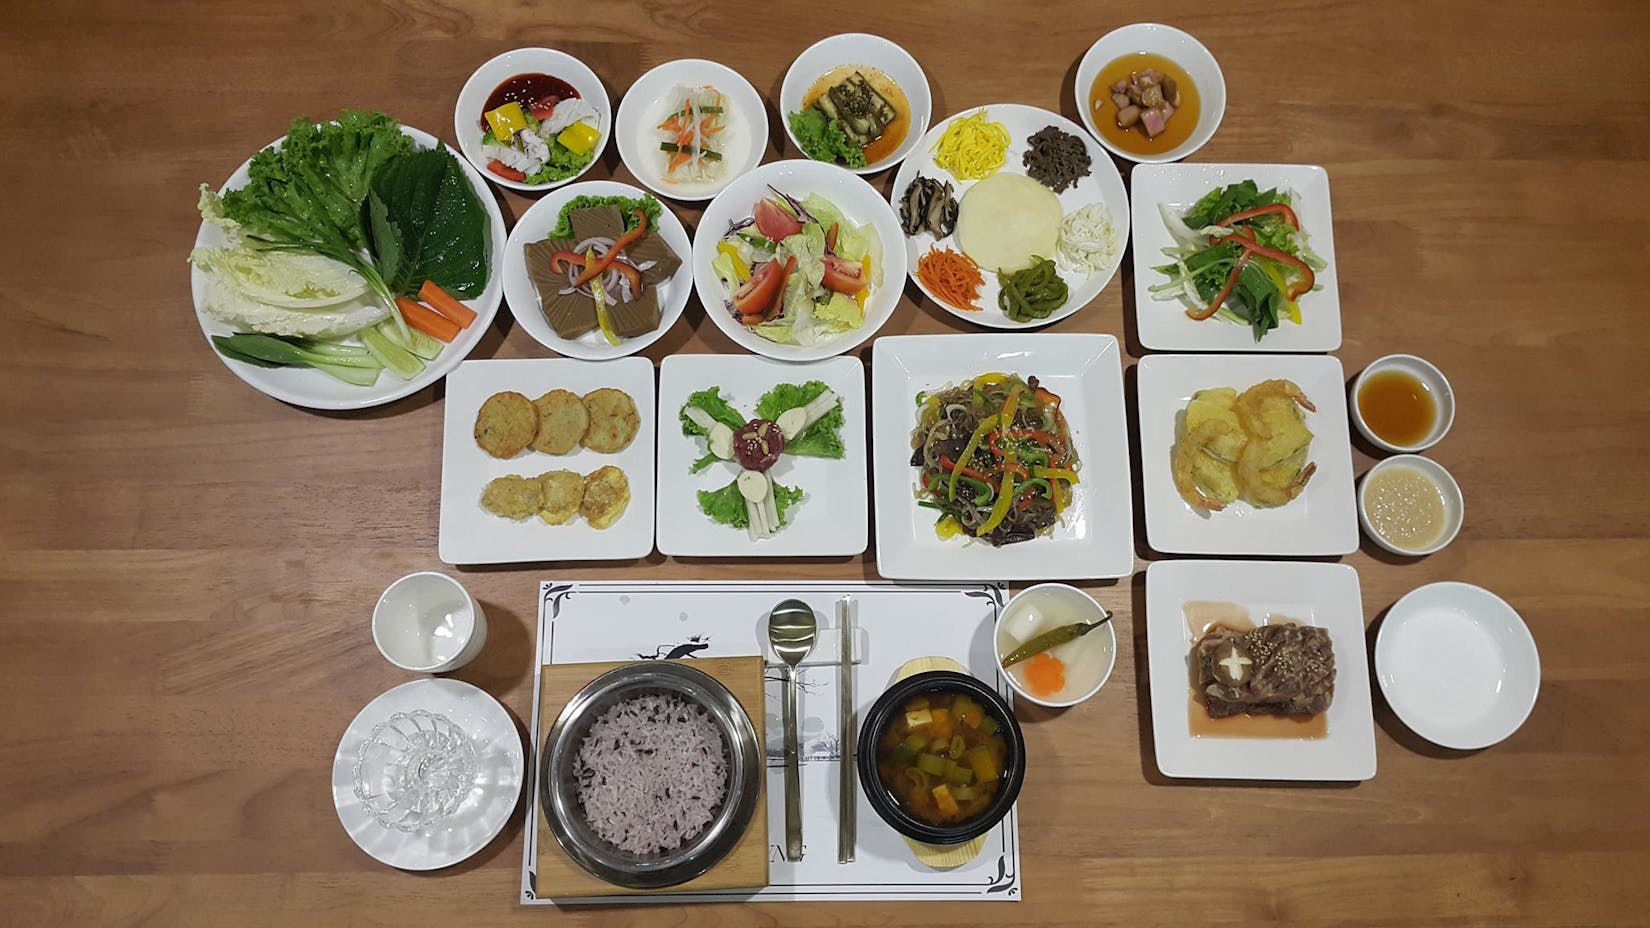 Gyeong Bok Gung Korean Restaurant Yangon | yathar